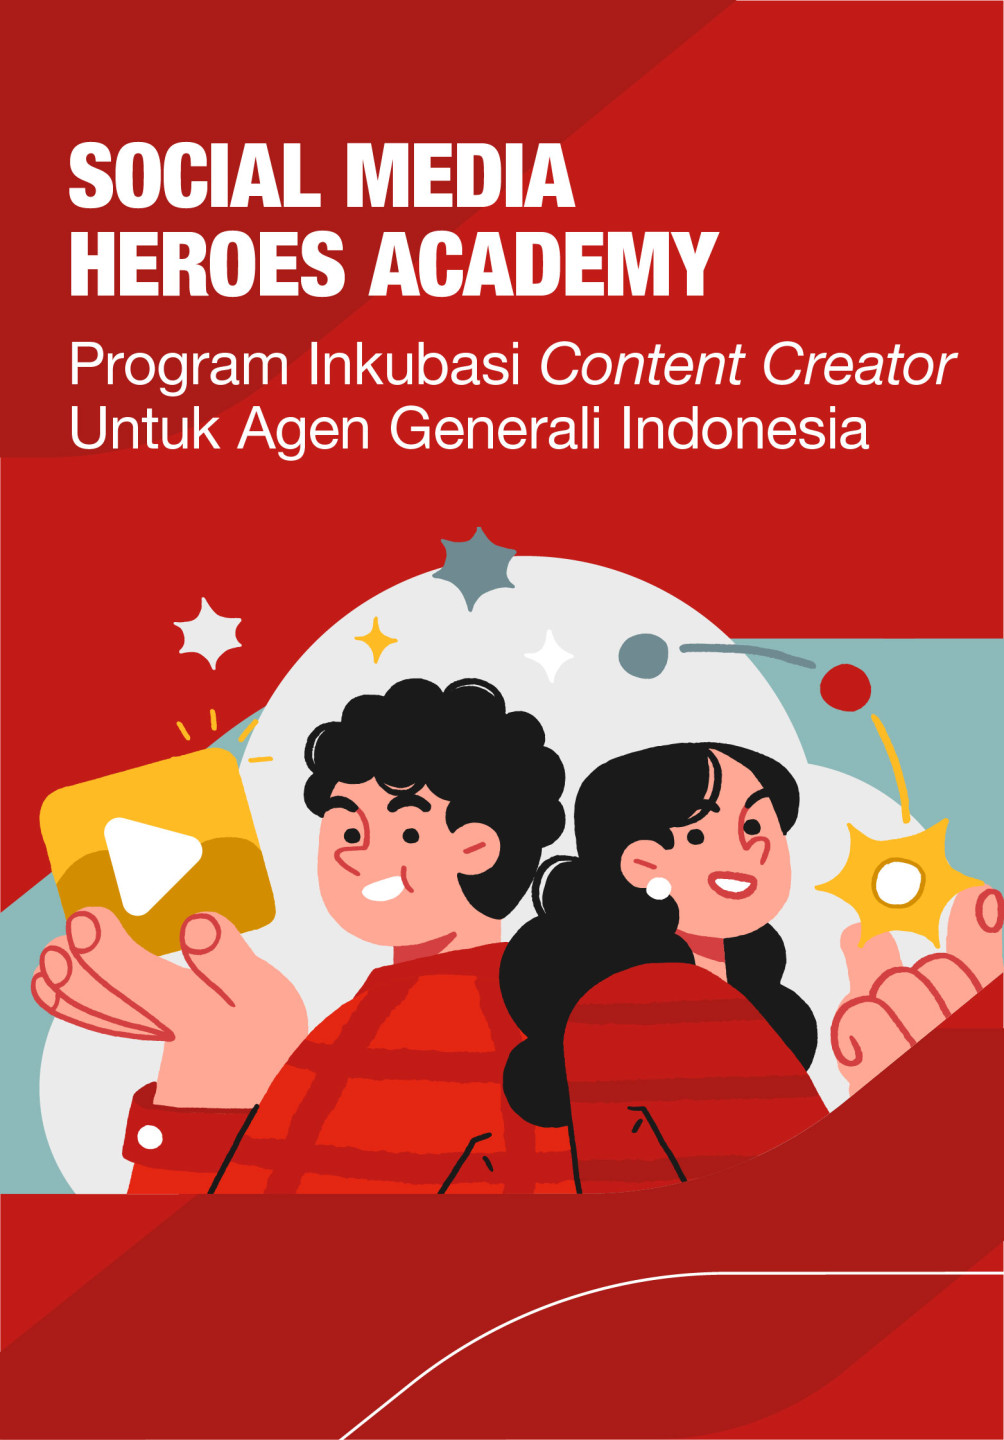 Ilustrasi dua orang karakter yang bersemangat dengan ikon konten digital, menggambarkan Program Inkubasi Content Creator dari Social Media Heroes Academy untuk agen Asuransi Generali Indonesia.